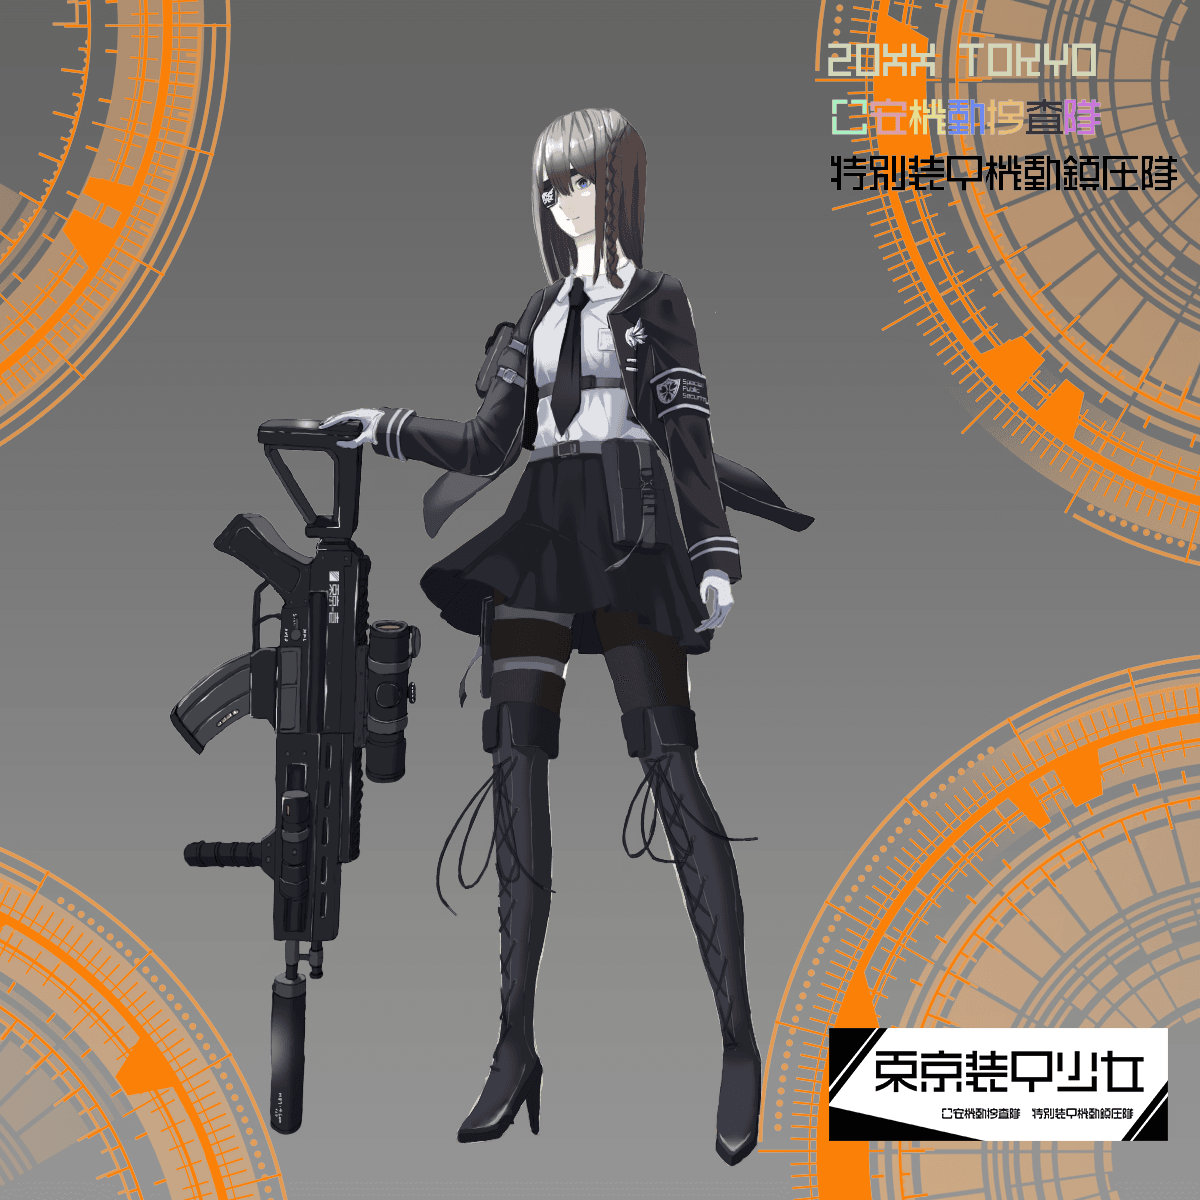 Tokyo Armor Girl#1105